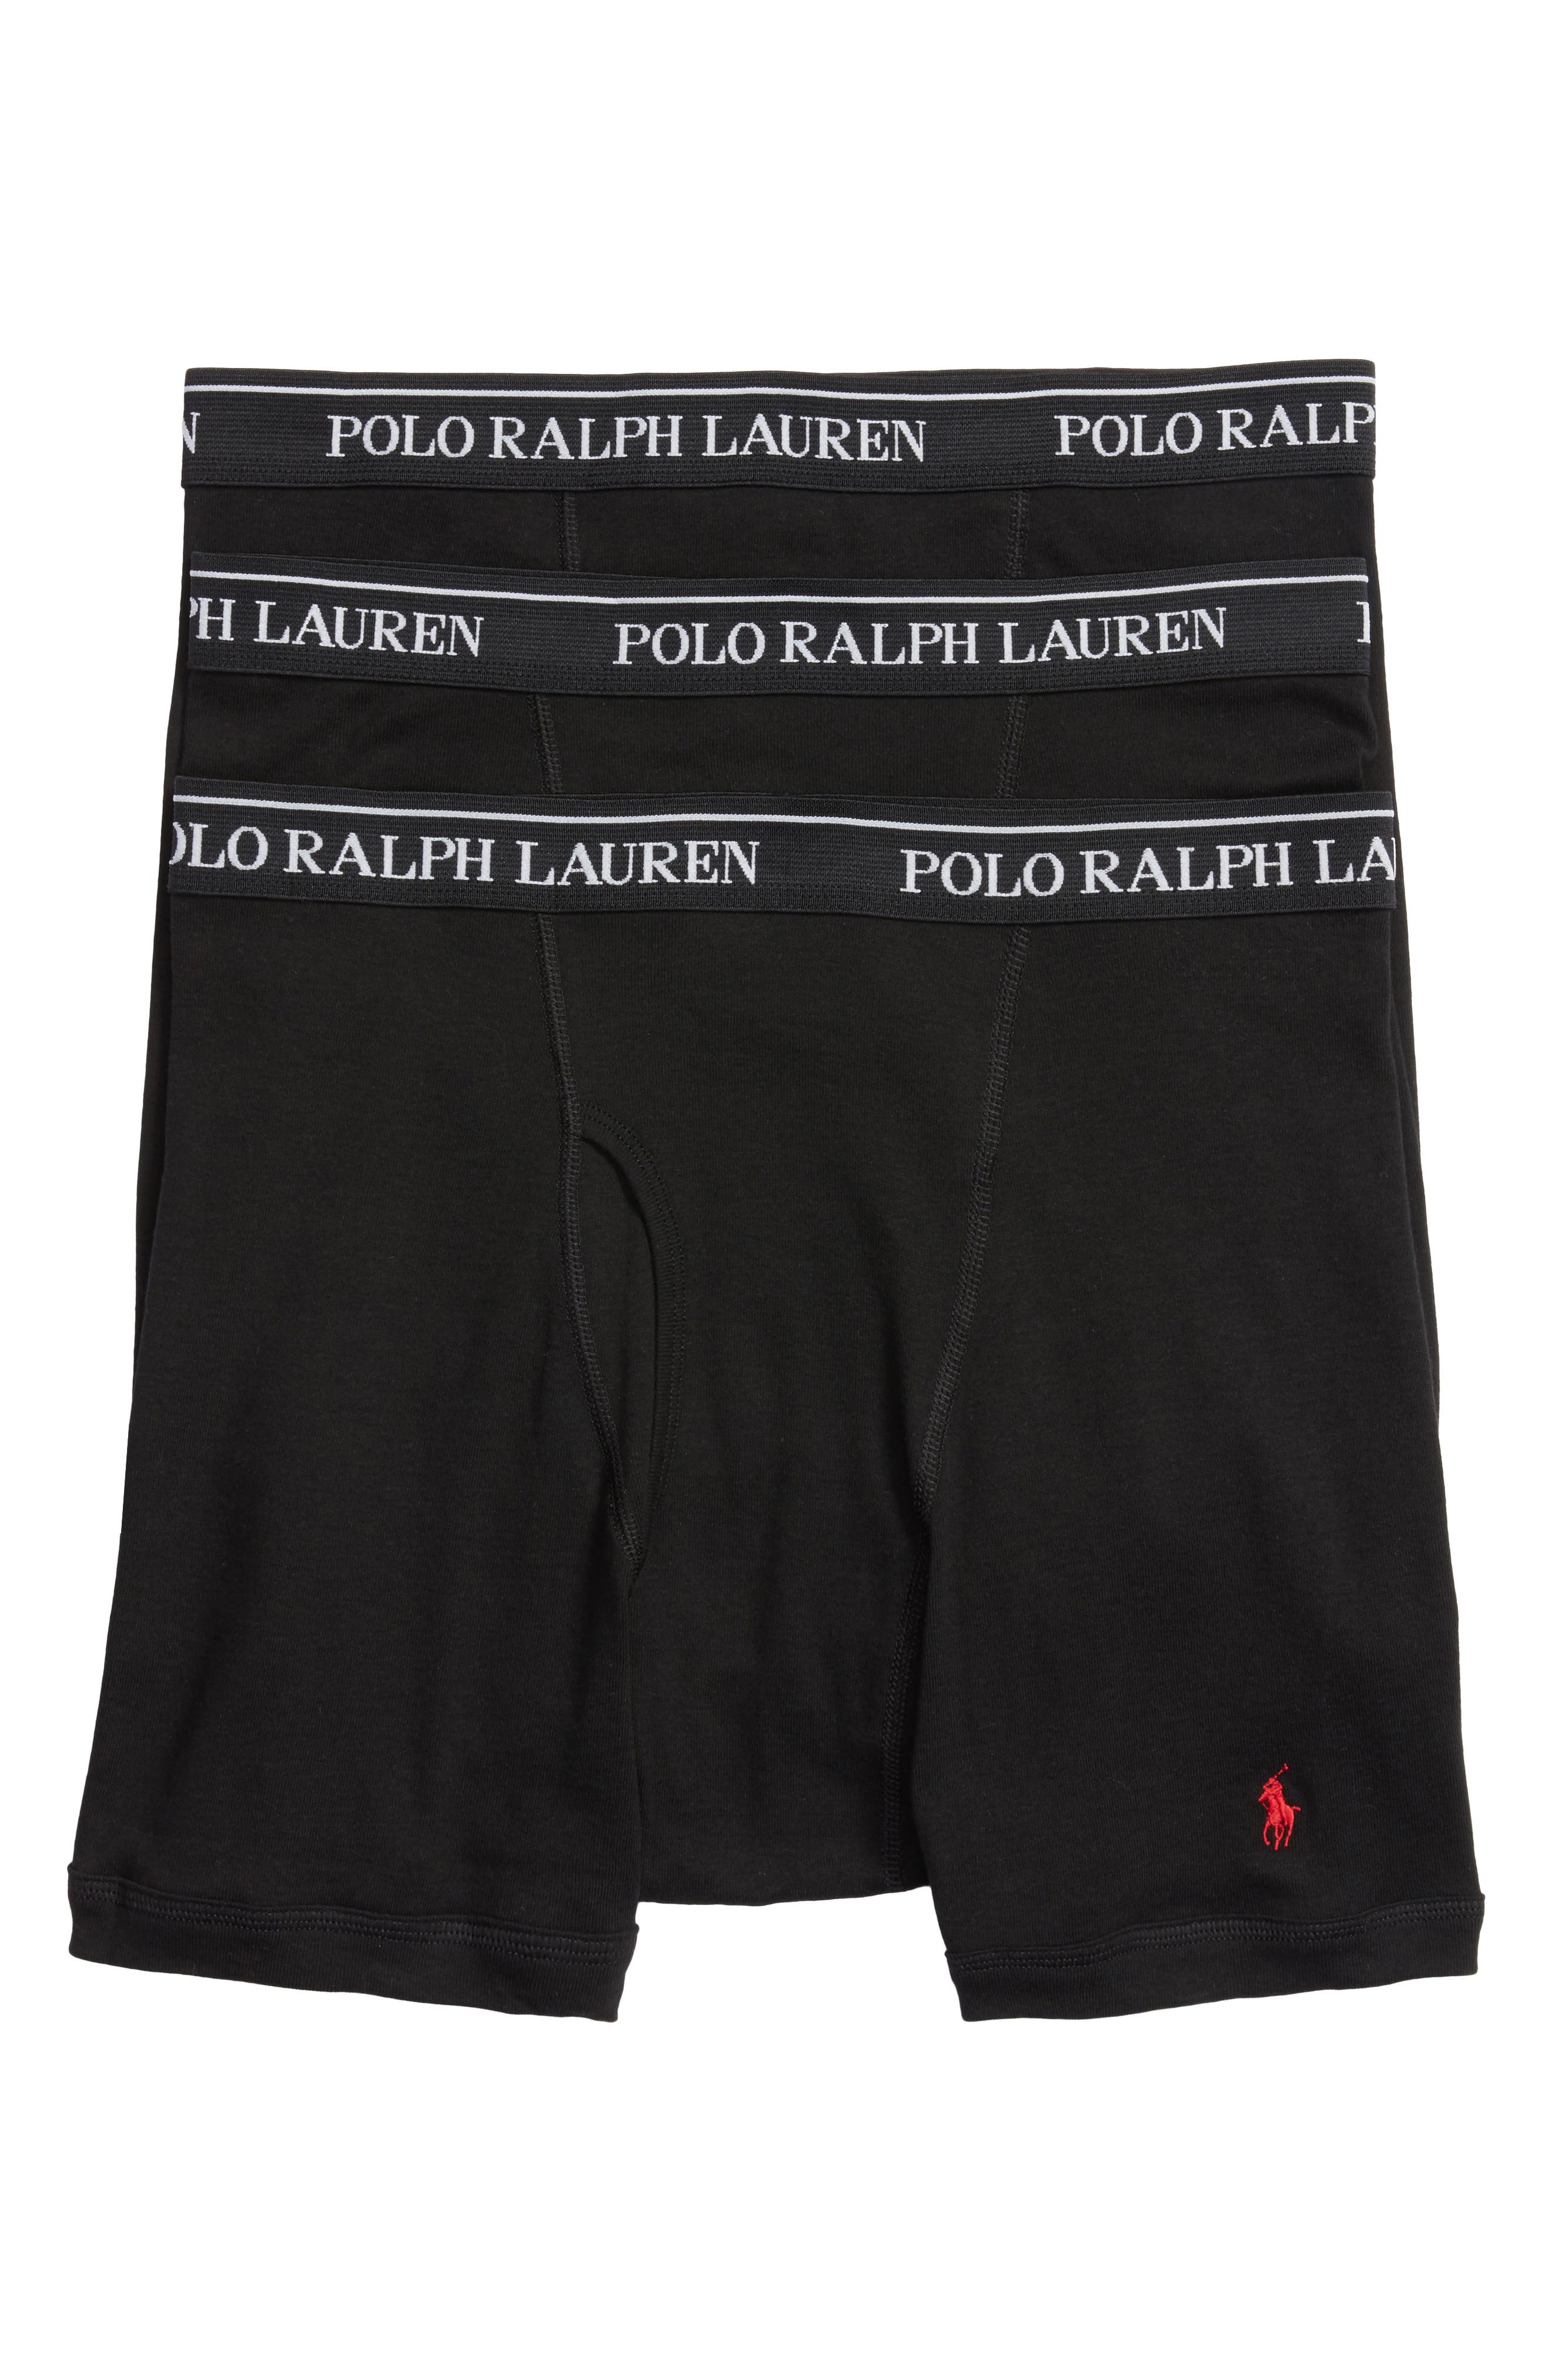 Men's Polo Ralph Lauren Underwear 